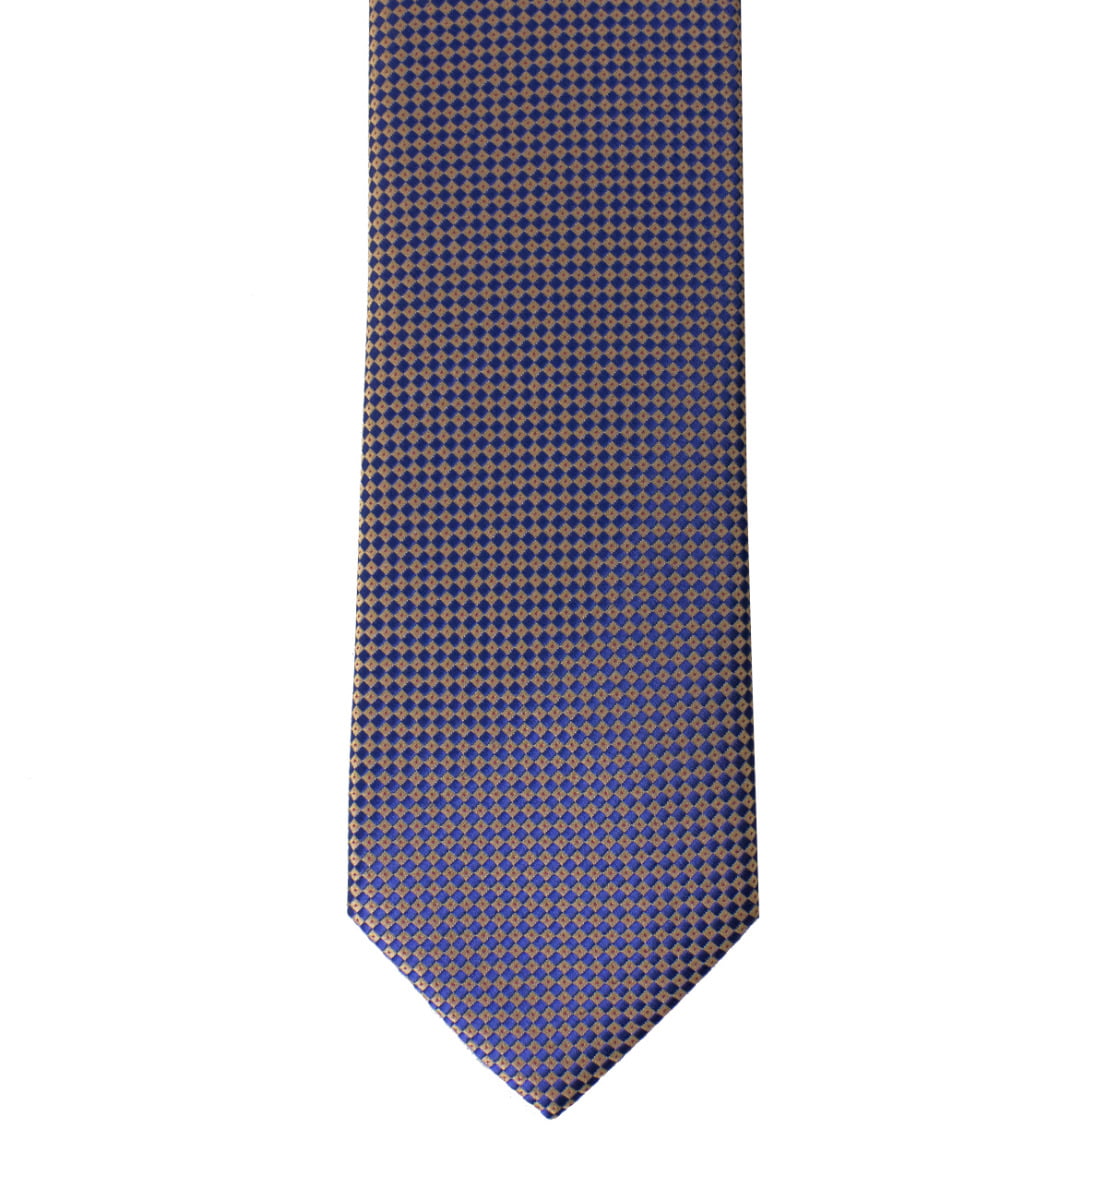 Cravatta uomo blu fantasia rombi oro 8cm di larghezza made in italy